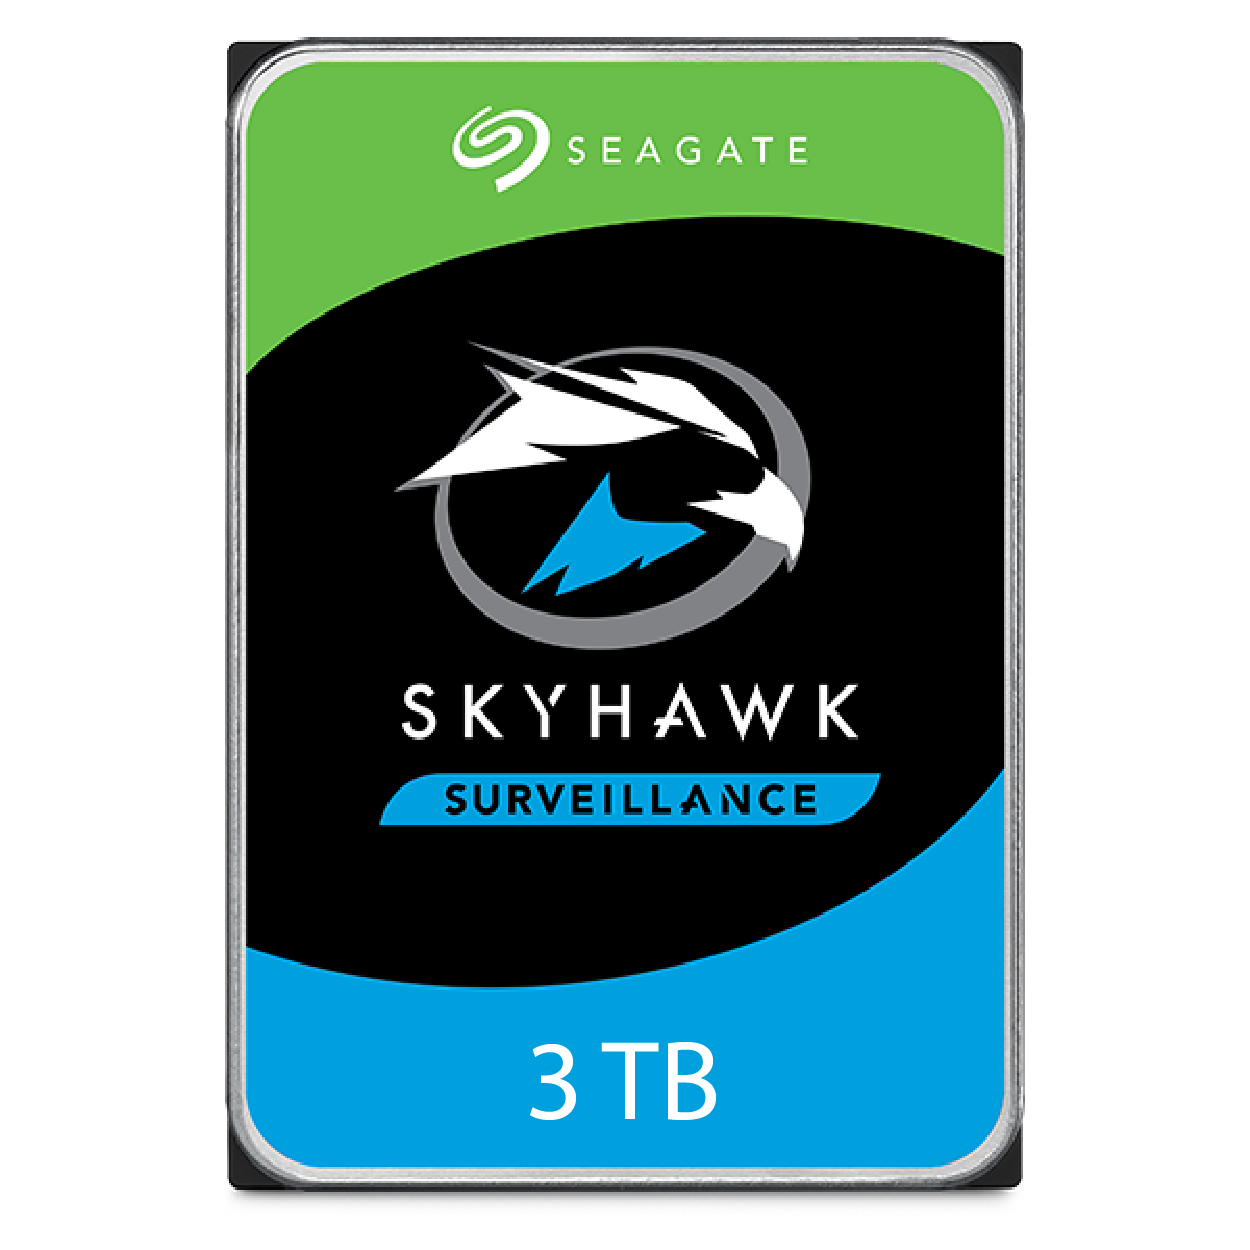 Seagate Skyhawk 3 TB 7/24 Güvenlik Harddiski ITH